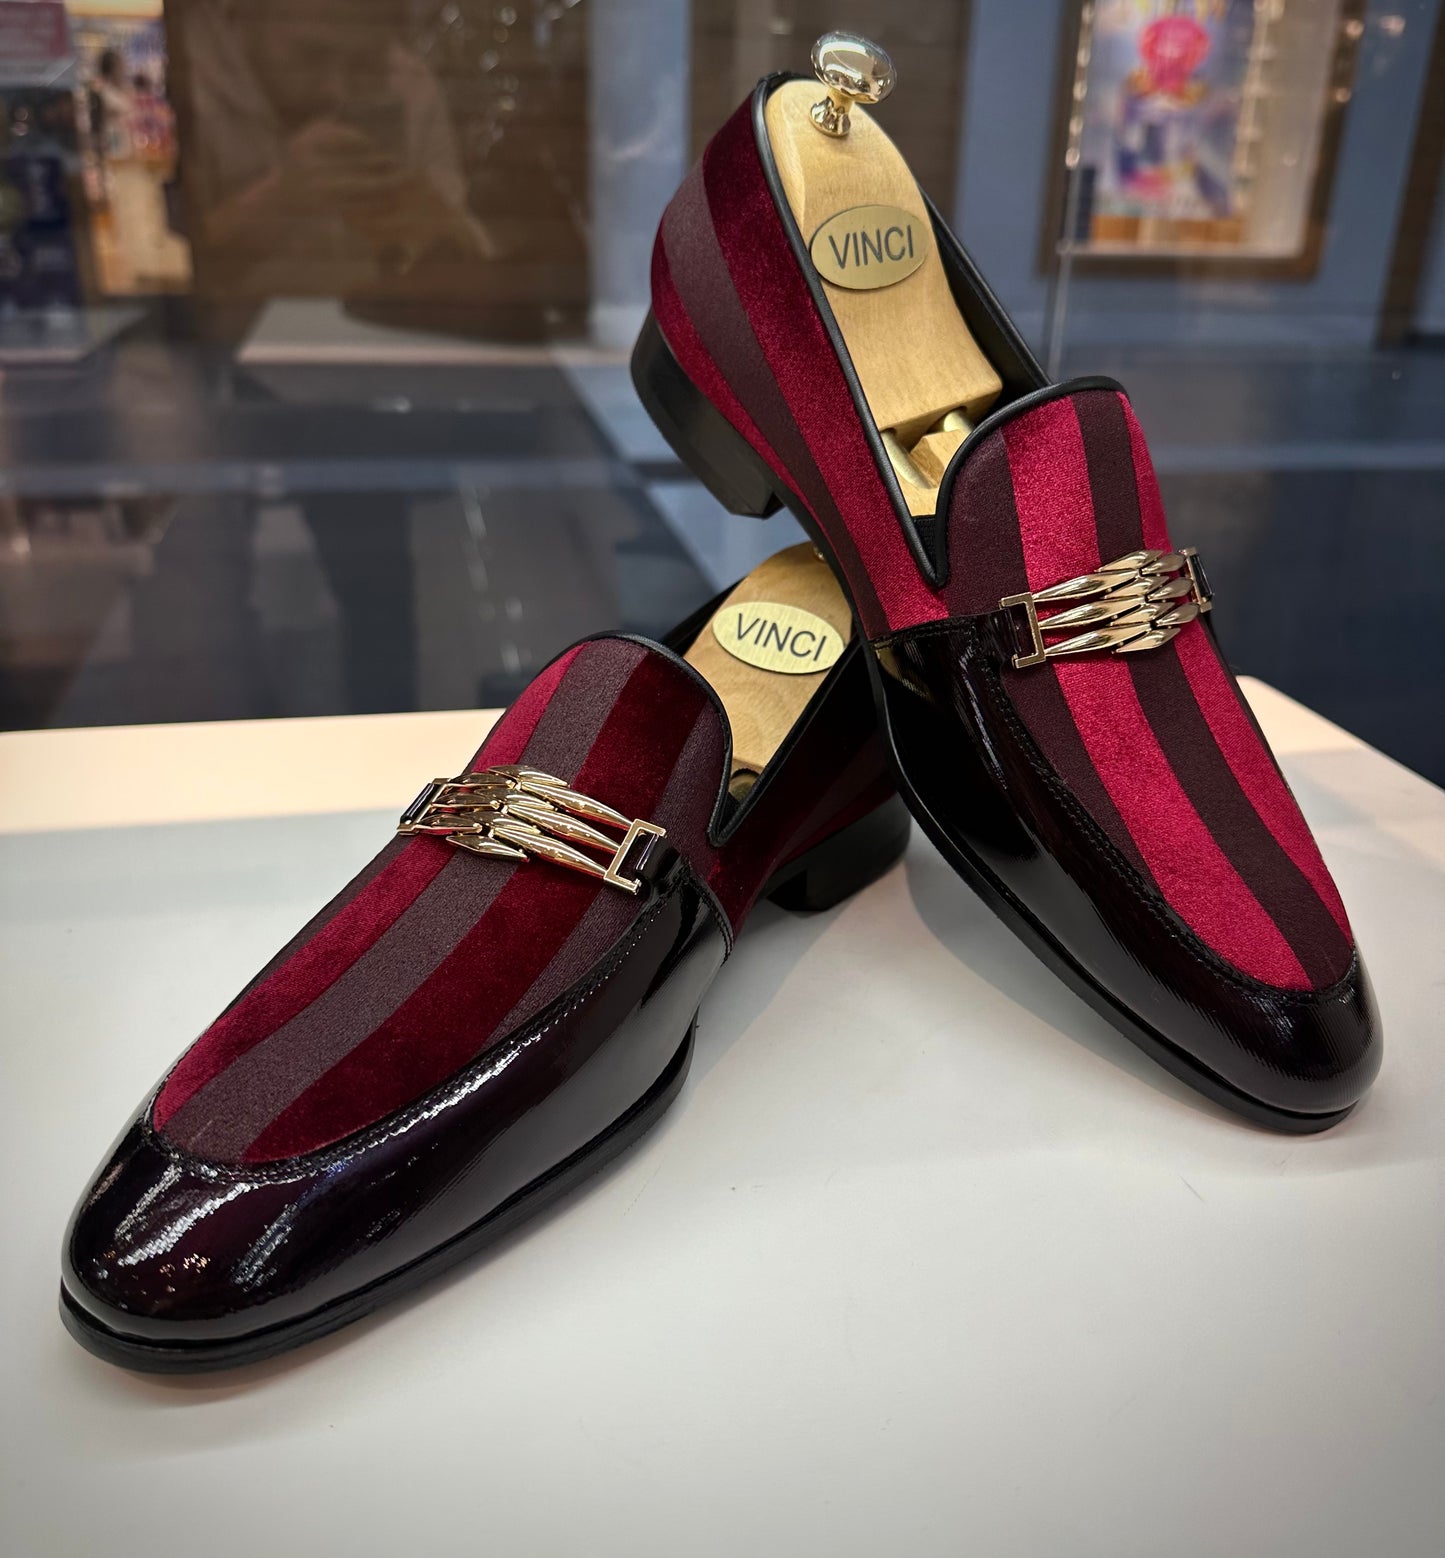 The Pontalto Leather Men Shoe Burgundy Bit Loafer